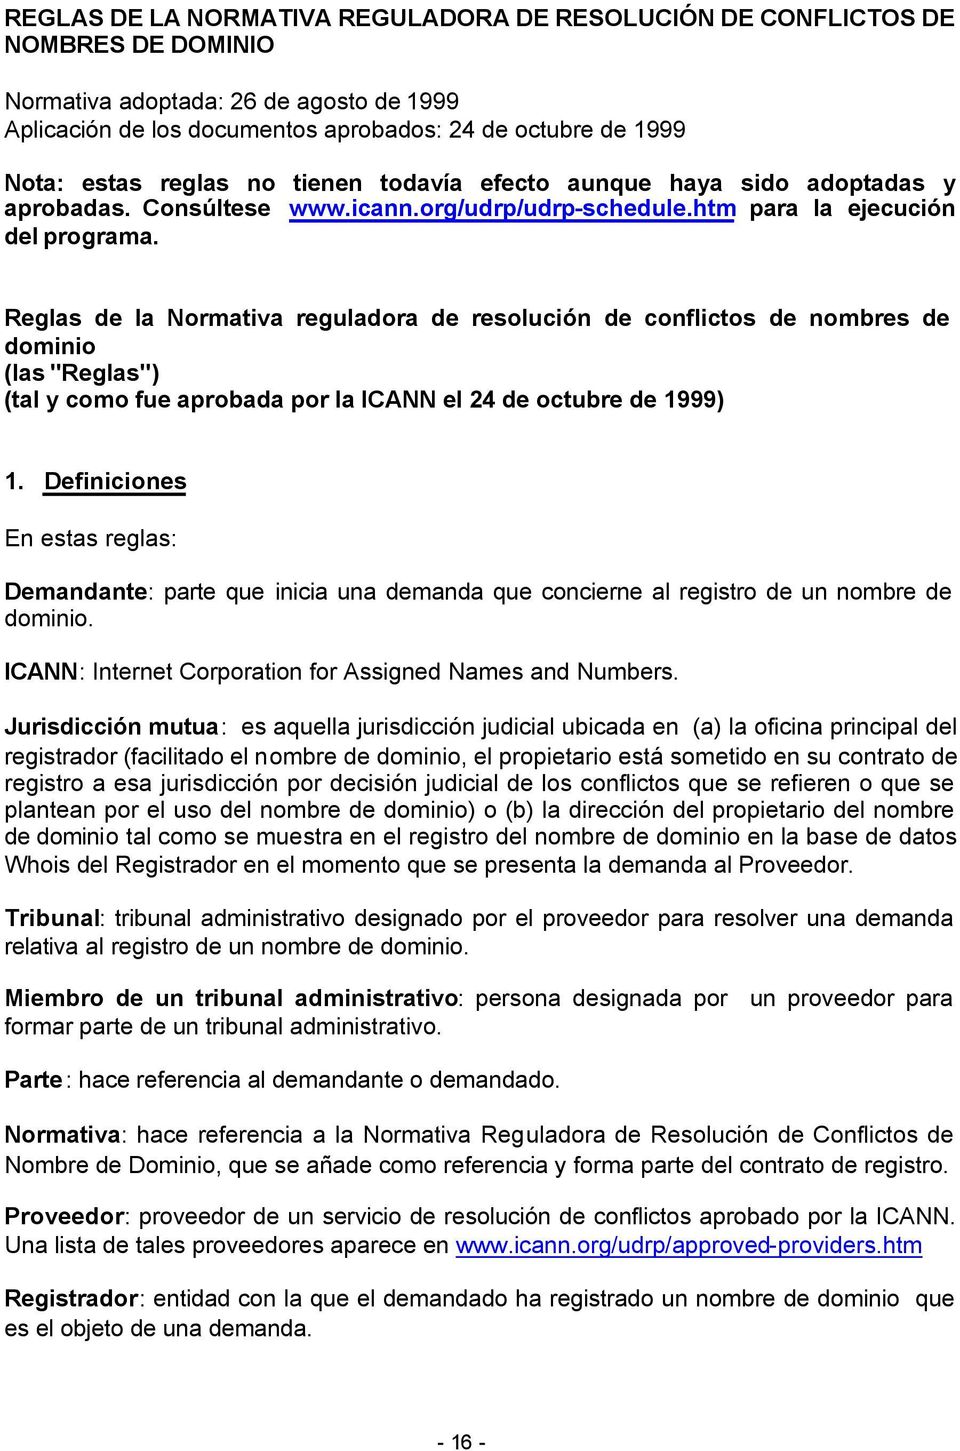 Reglas de la Normativa reguladora de resolución de conflictos de nombres de dominio (las "Reglas") (tal y como fue aprobada por la ICANN el 24 de octubre de 1999) 1.